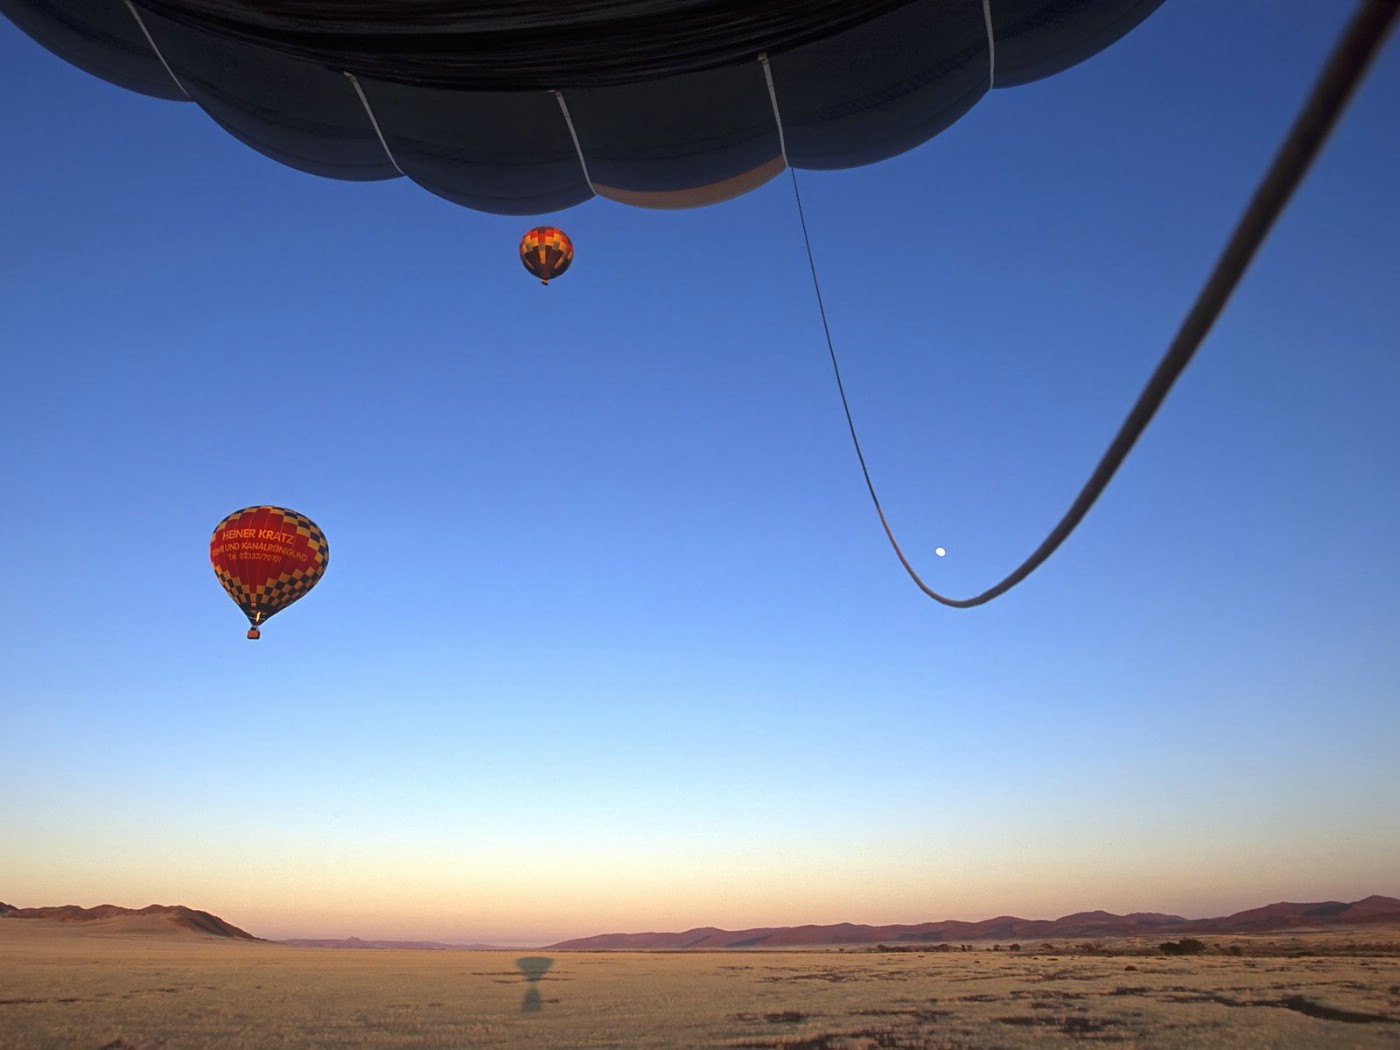 壁纸1400x1050文化之旅 地理人文景观壁纸精选 第二辑 Hot Air Balloons Take Off at Sunrise Namib Desert Namibia 纳米比亚 纳米比沙漠热气球图片壁纸壁纸 文化之旅地理人文景观壁纸精选 第二辑壁纸 文化之旅地理人文景观壁纸精选 第二辑图片 文化之旅地理人文景观壁纸精选 第二辑素材 人文壁纸 人文图库 人文图片素材桌面壁纸